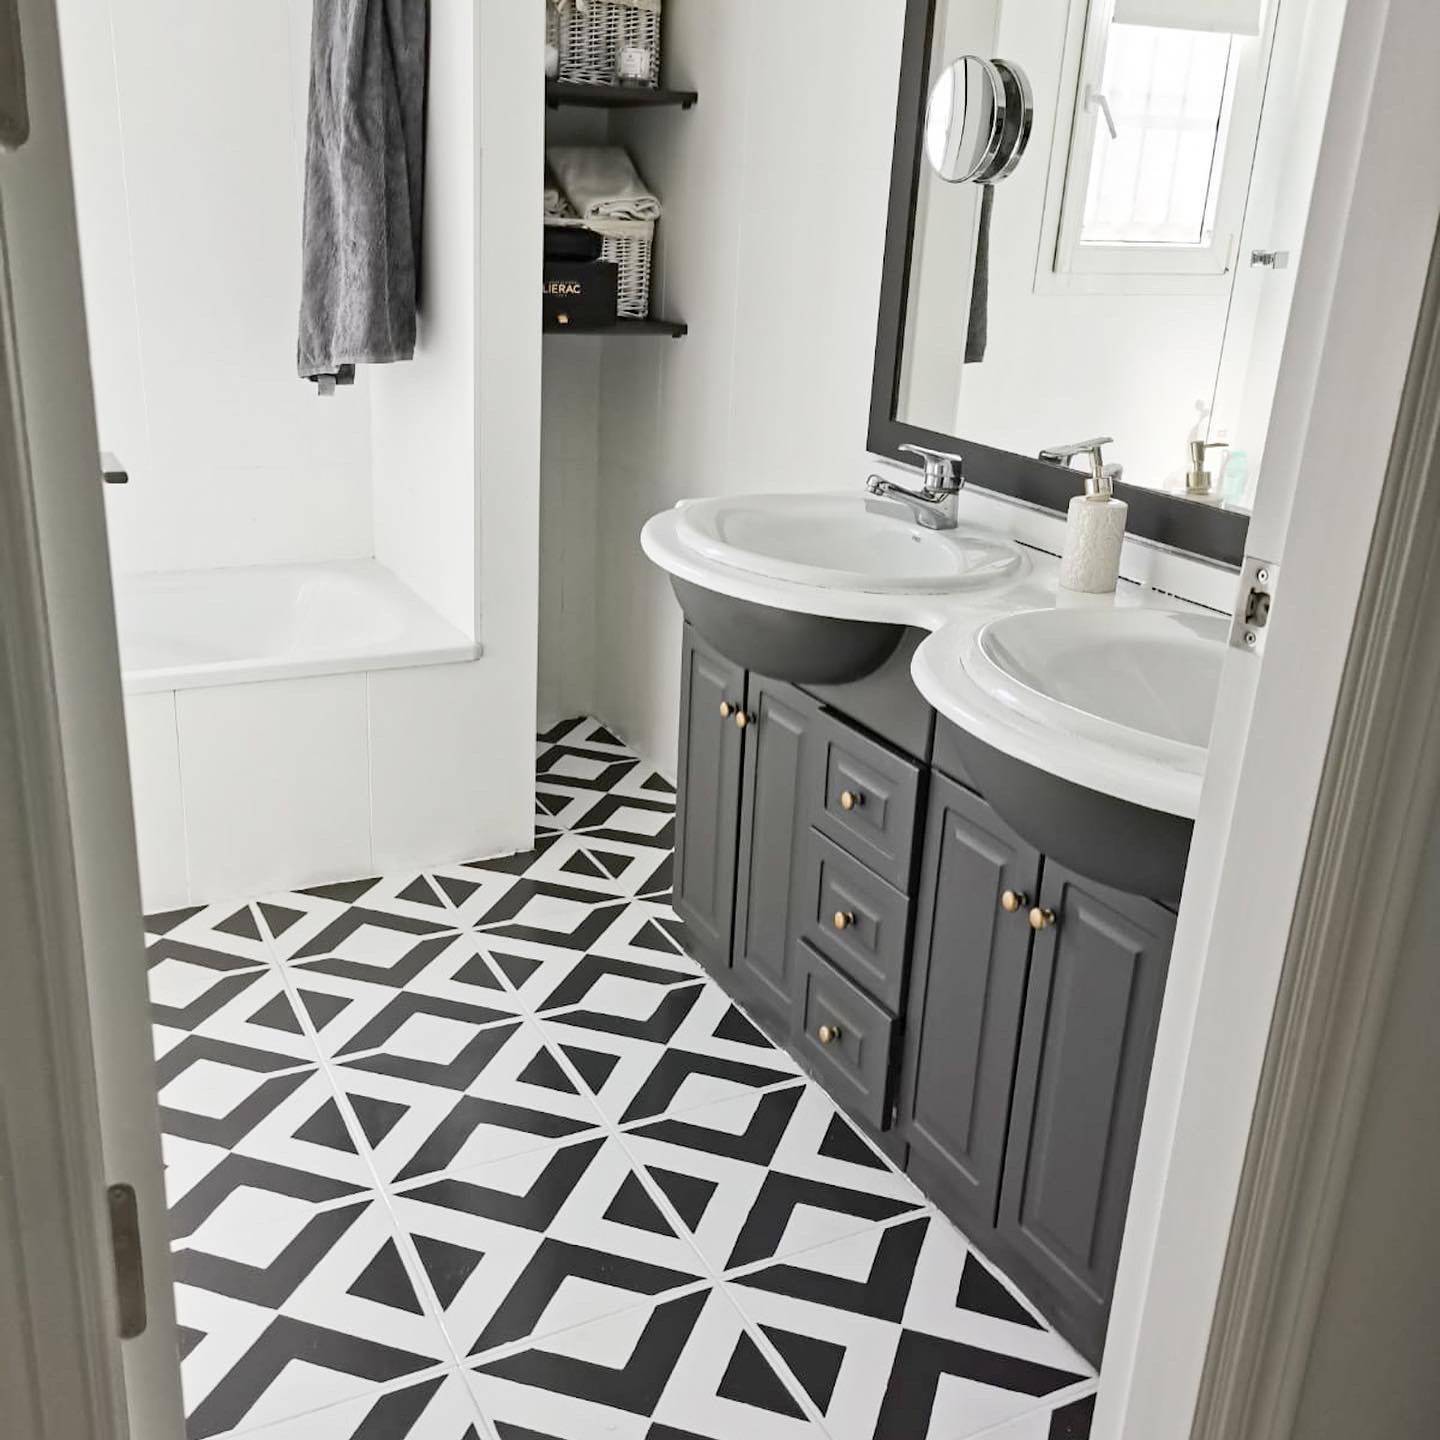 Baño con suelo pintado con pintura a la tiza en blanco y negro con dibujos geométricos.